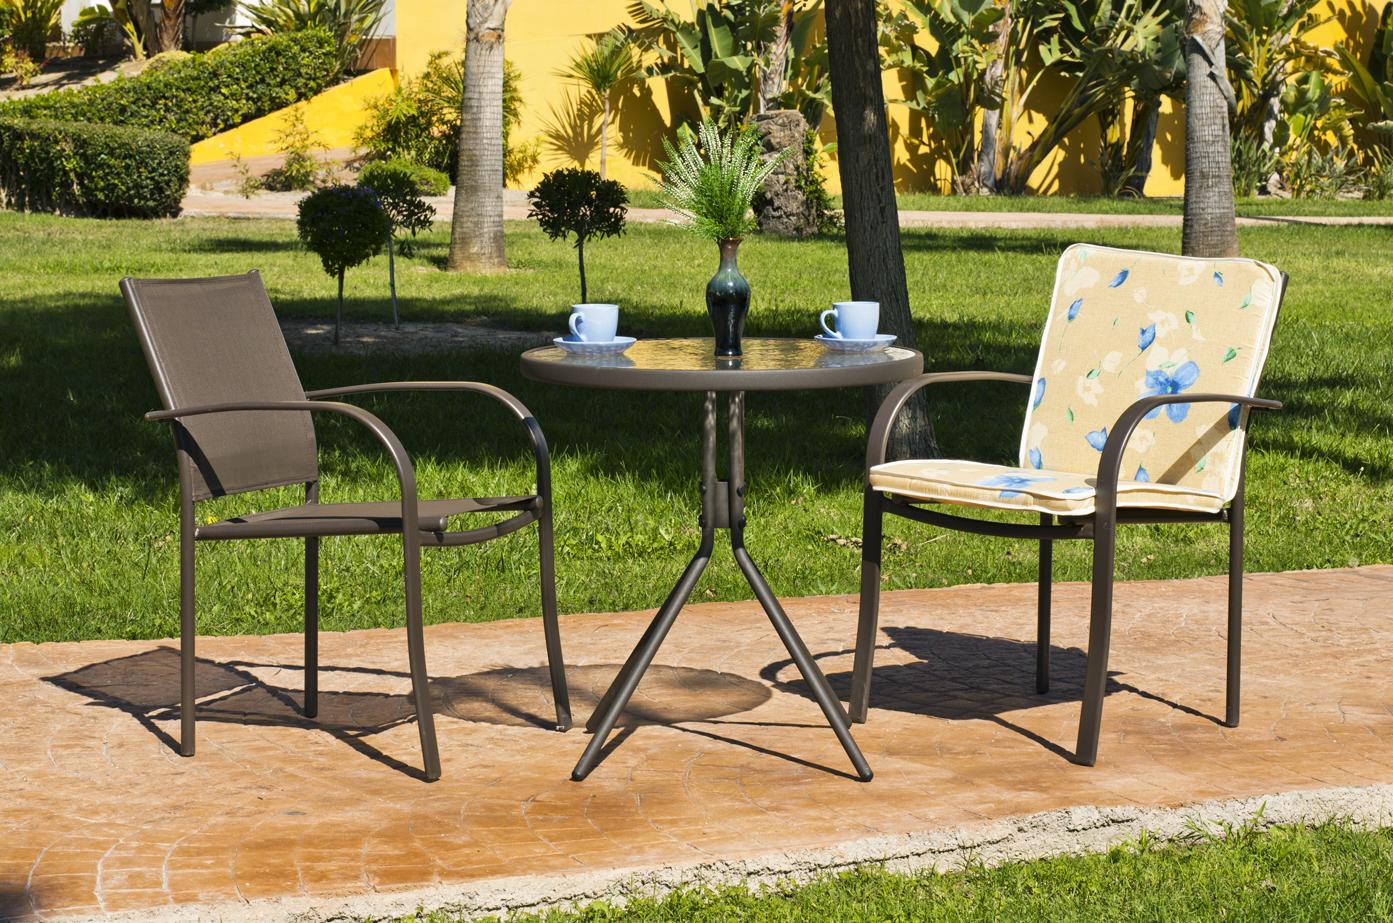 Conjunto de acero color bronce: mesa redonda de 70 cm. Con tapa de cristal templado + 2 sillones de acero y textilen